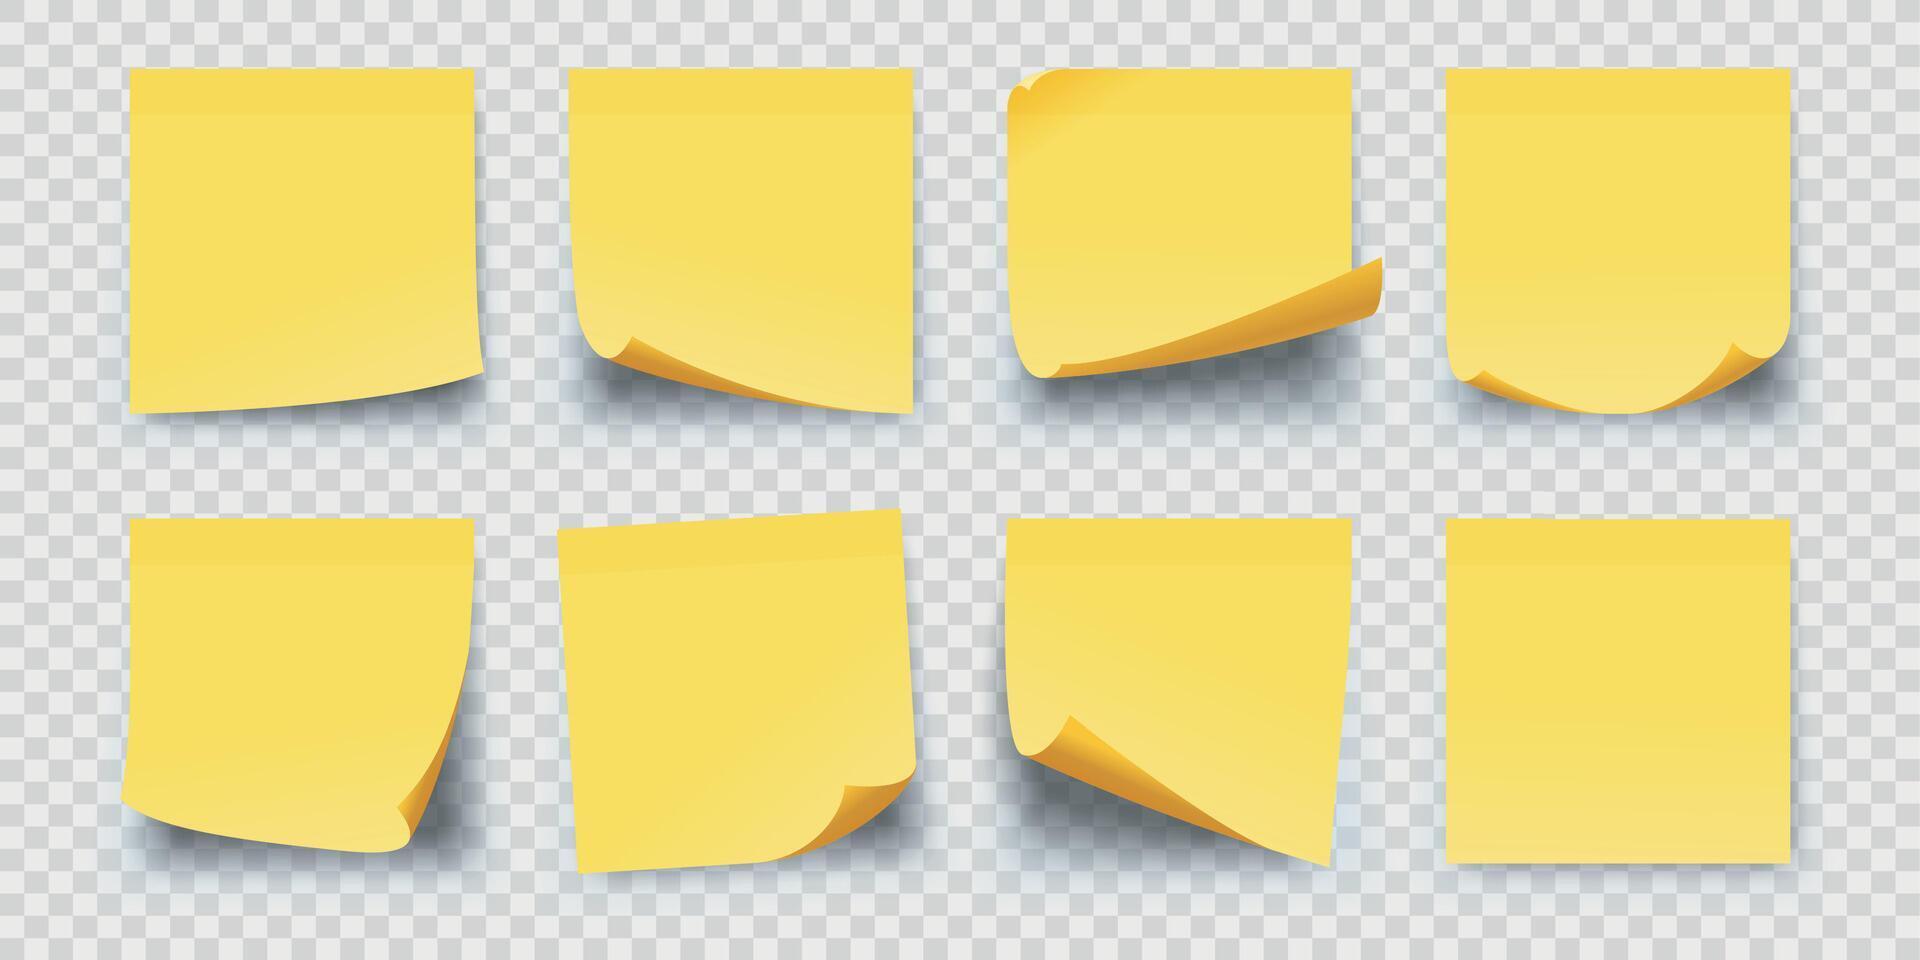 realistisch plein geel papier kleverig memo notities. kantoor herinnering sticker Pagina's met gekruld hoeken. muur kladblok voor krabbels vector reeks